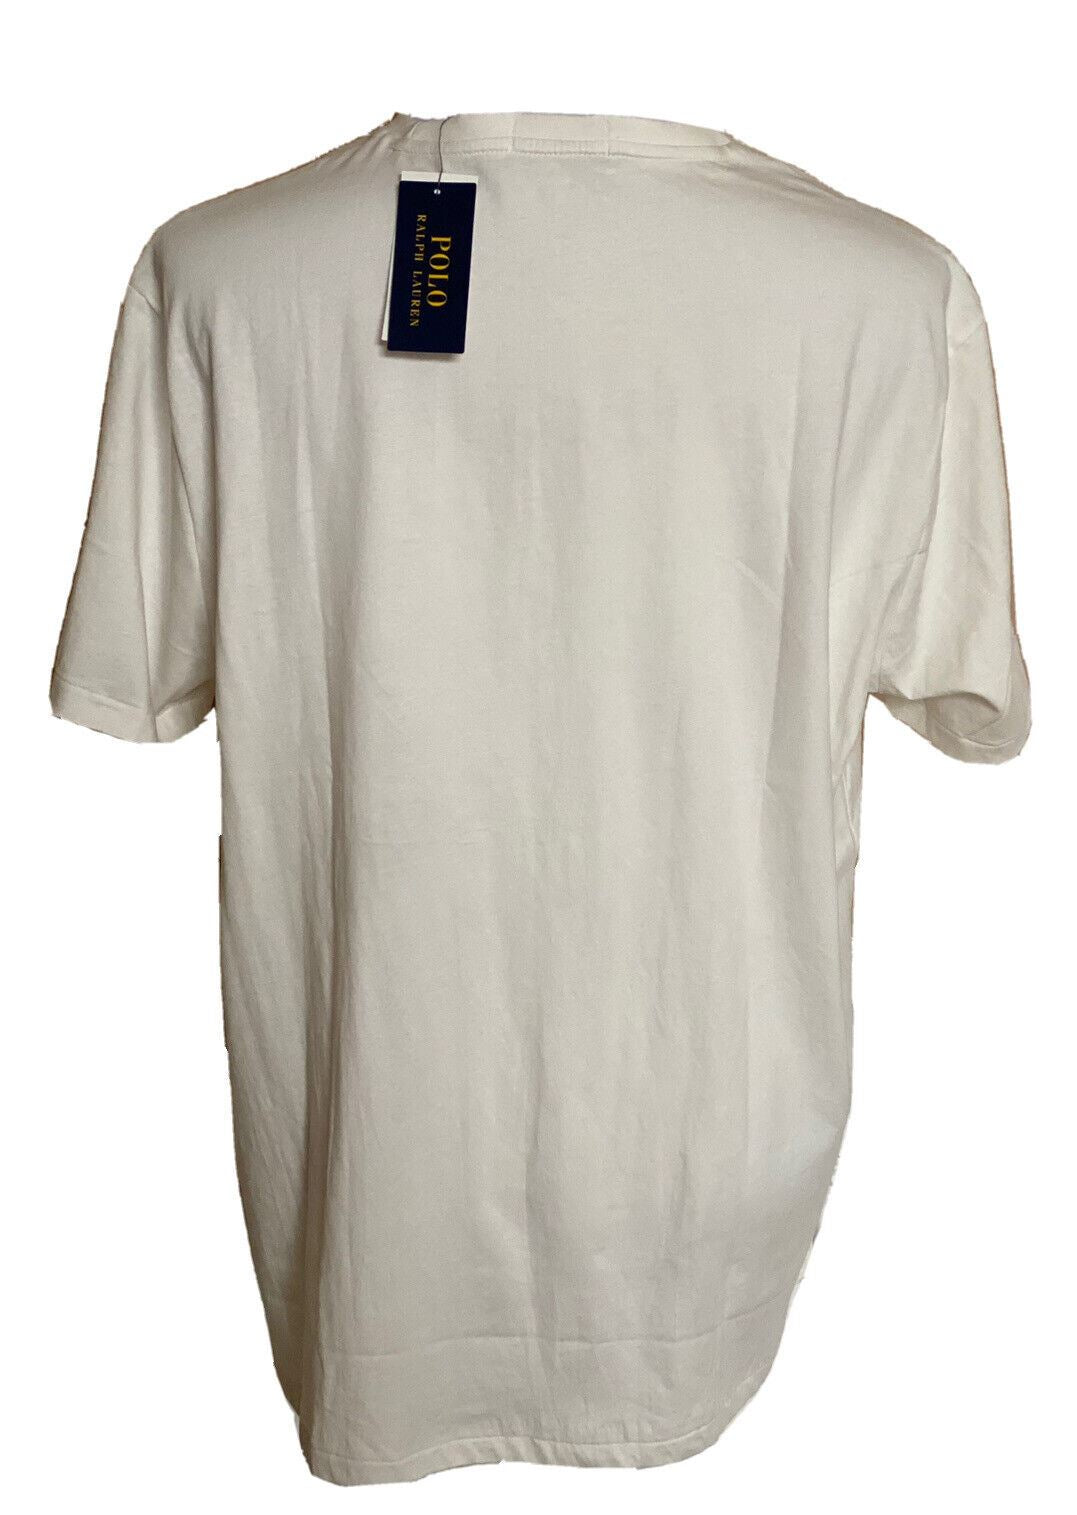 Белая футболка с короткими рукавами и фирменным логотипом Polo Ralph Lauren, размер NWT: 65 долларов США, белый размер XL 